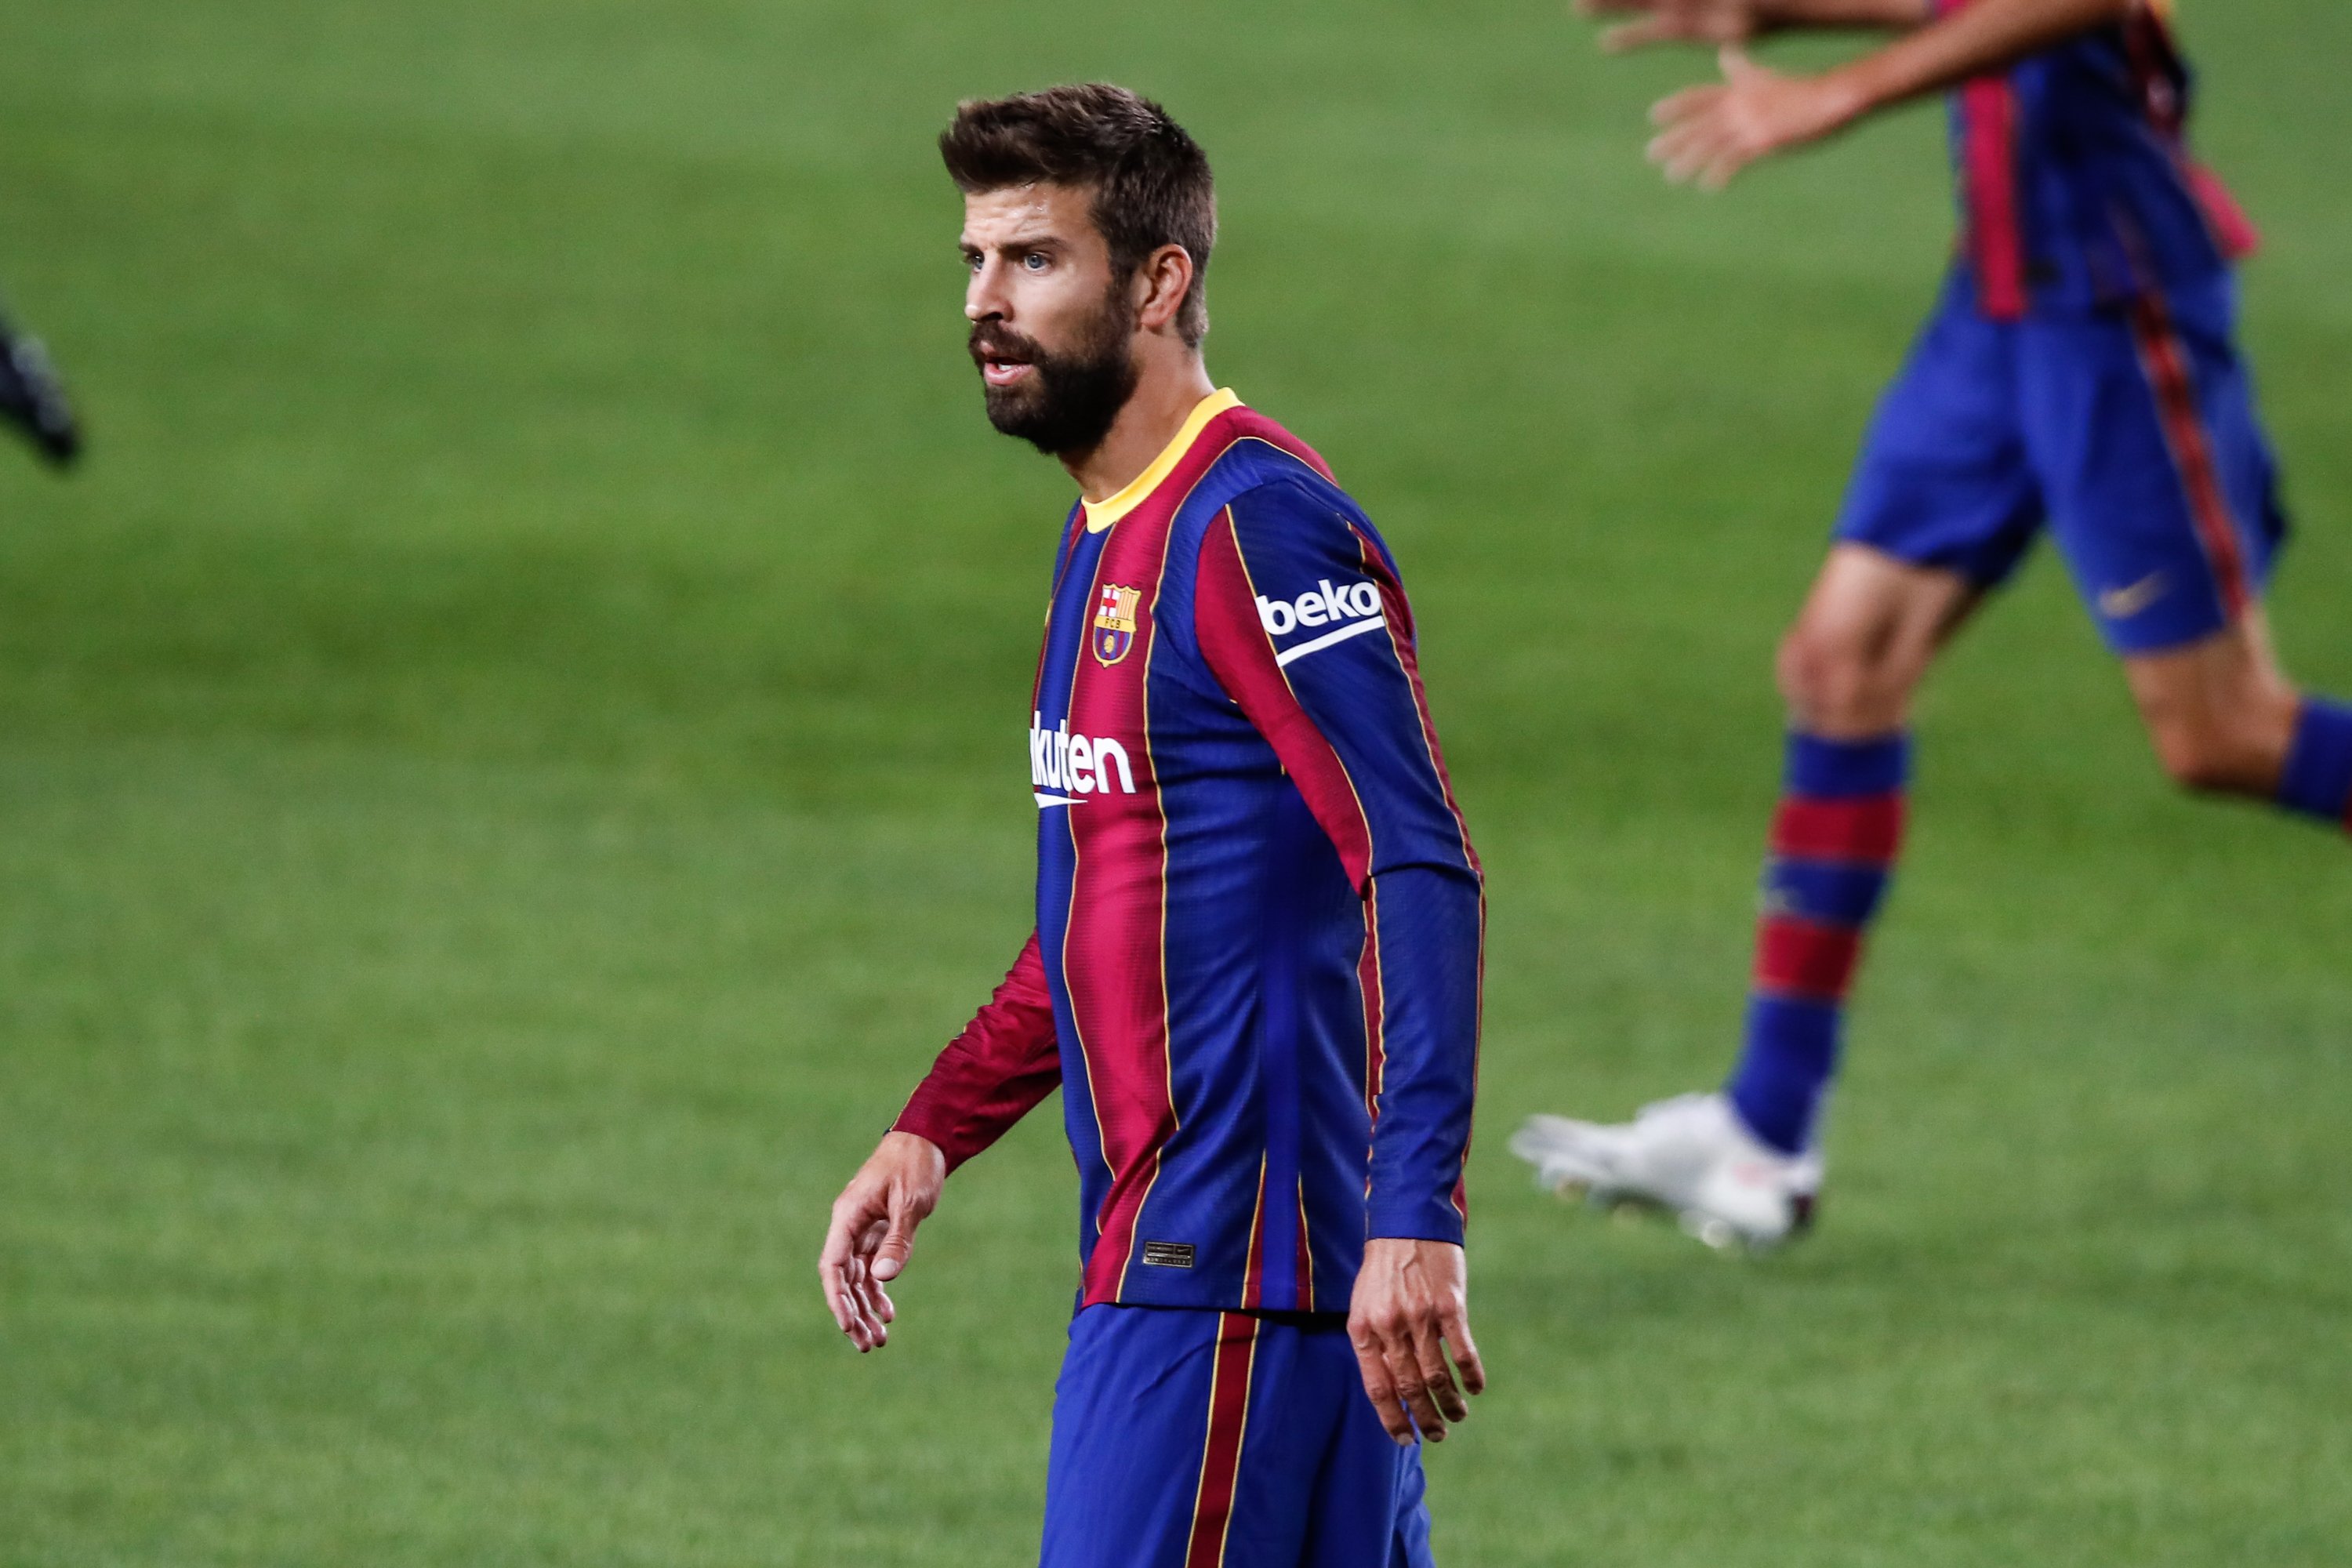 Més problemes al Barça: Beko pagarà menys pel seu patrocini